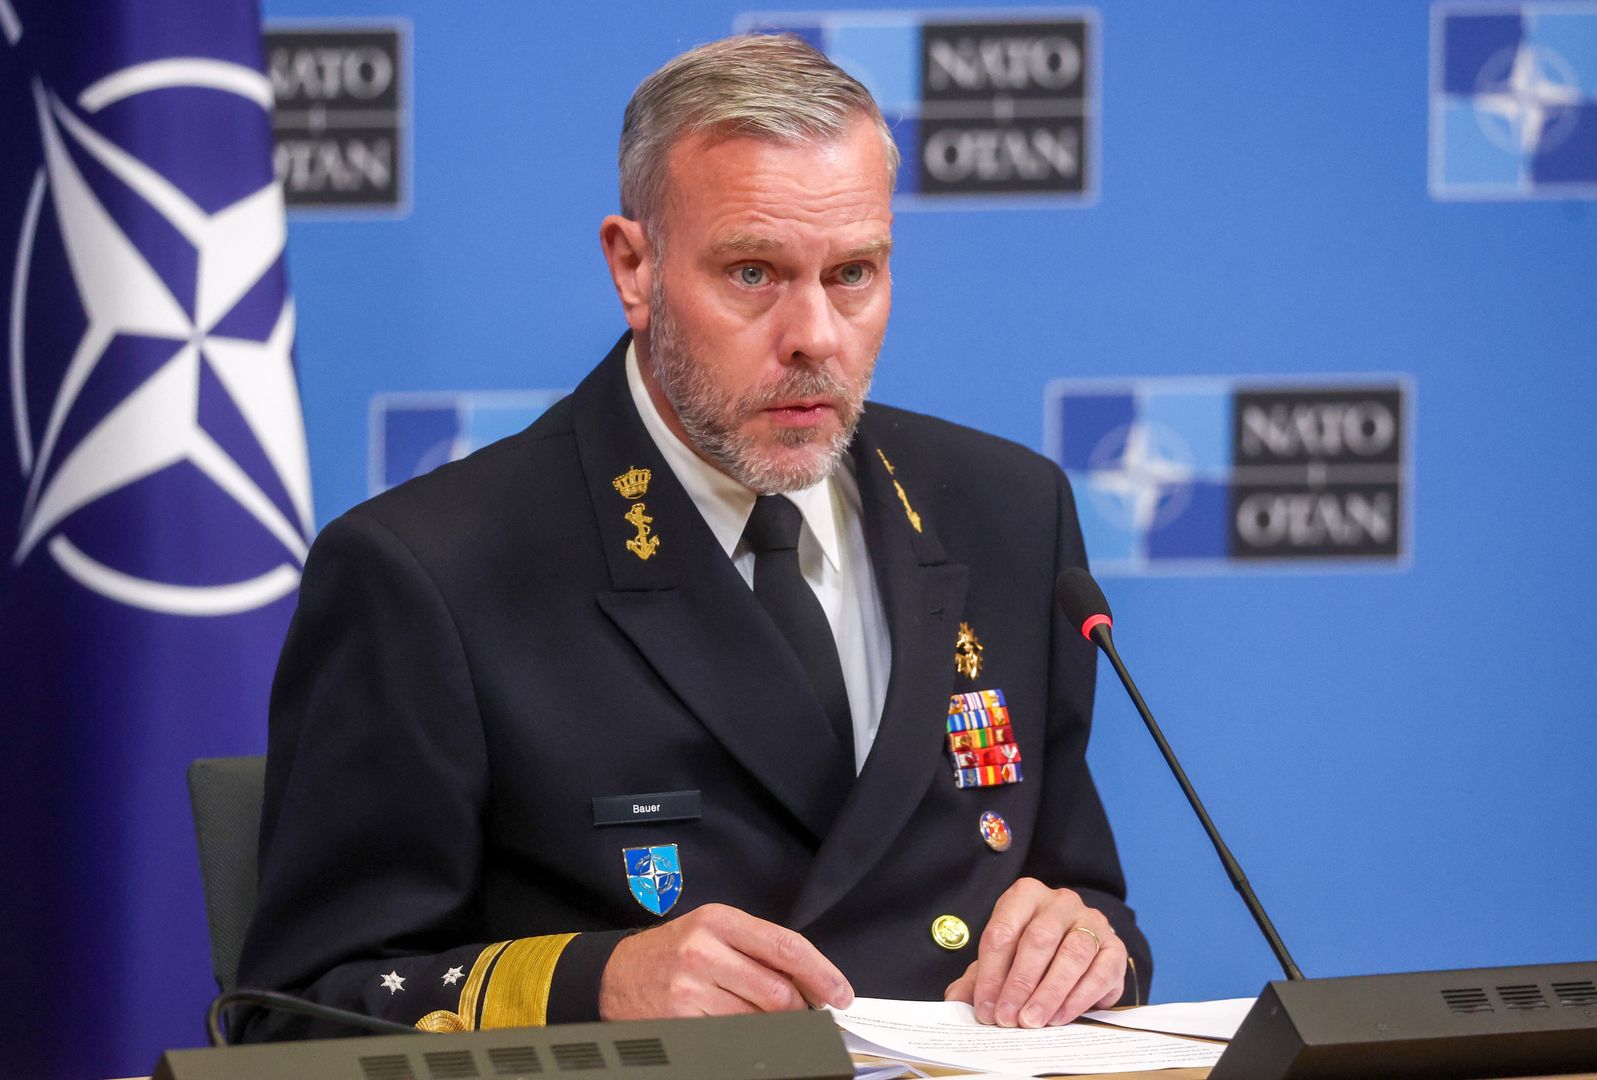 Rosja może rozpocząć "wojnę totalną" w przeciągu 20 lat - ostrzega admirał NATO